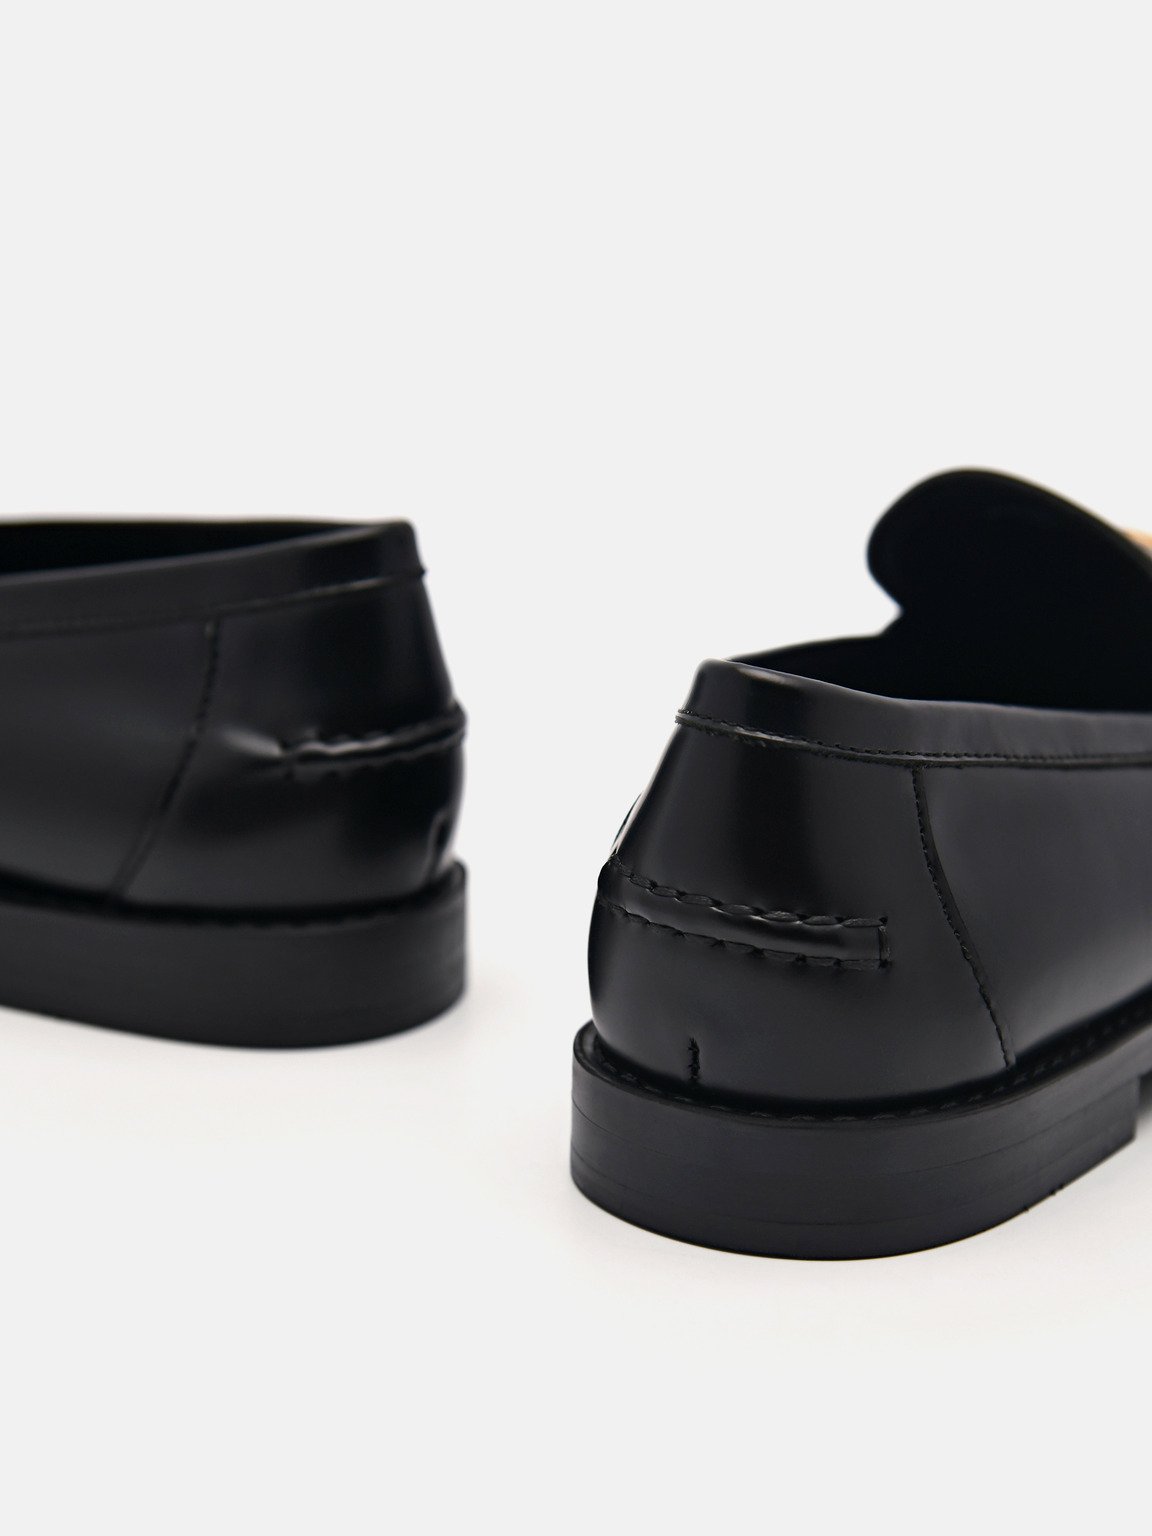 PEDRO工作室Jeanne皮革樂福鞋, 黑色